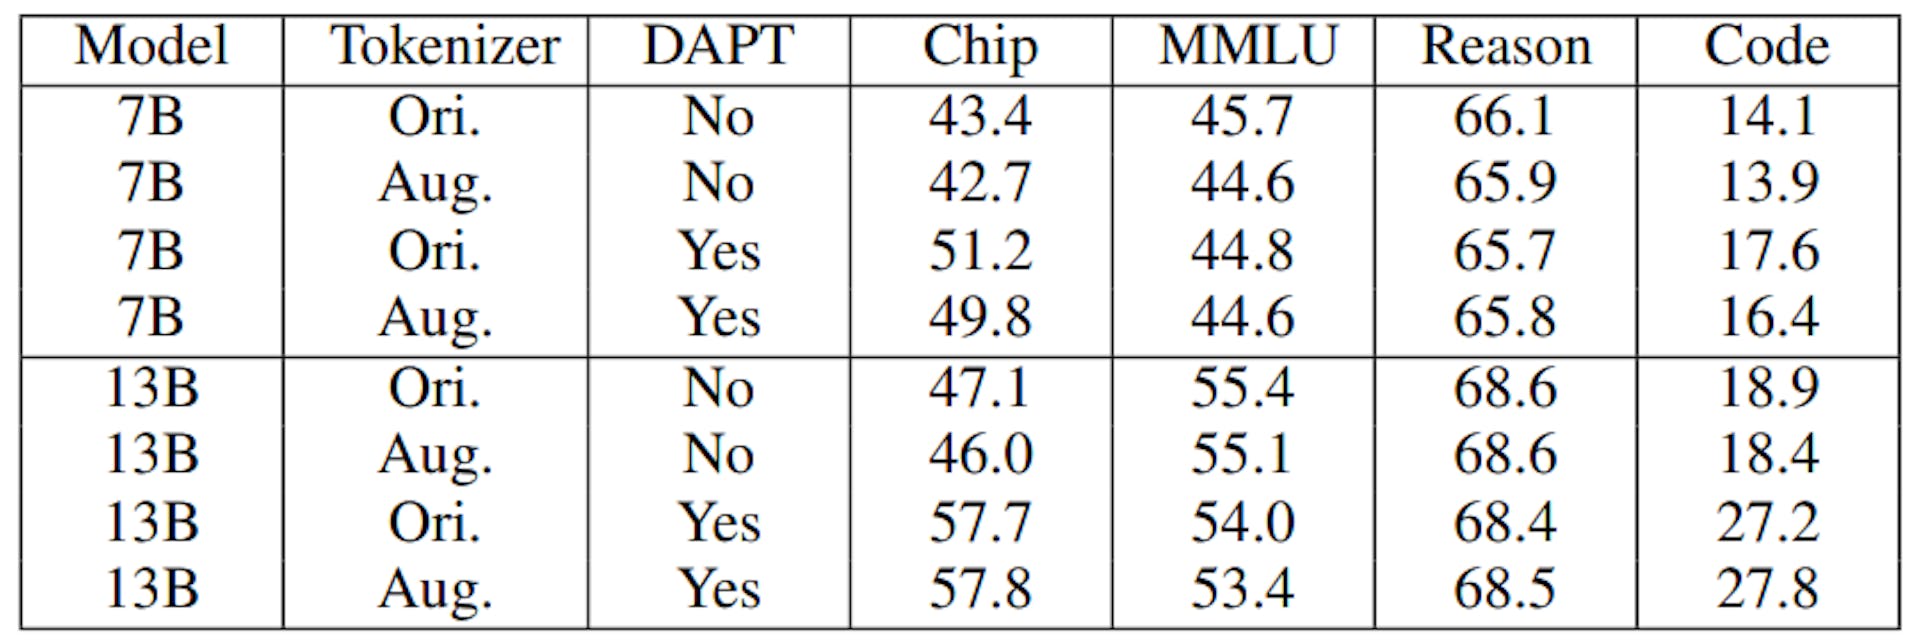 表 IX: 異なるトークナイザーを使用した ChipNeMo モデルの評価結果。Aug. は拡張トークナイザーを示し、Ori. は LLaMA2 オリジナル トークナイザーを使用していることを示します。DAPT なしで拡張トークナイザーを使用することは、セクション III-A のモデル初期化に対応します。